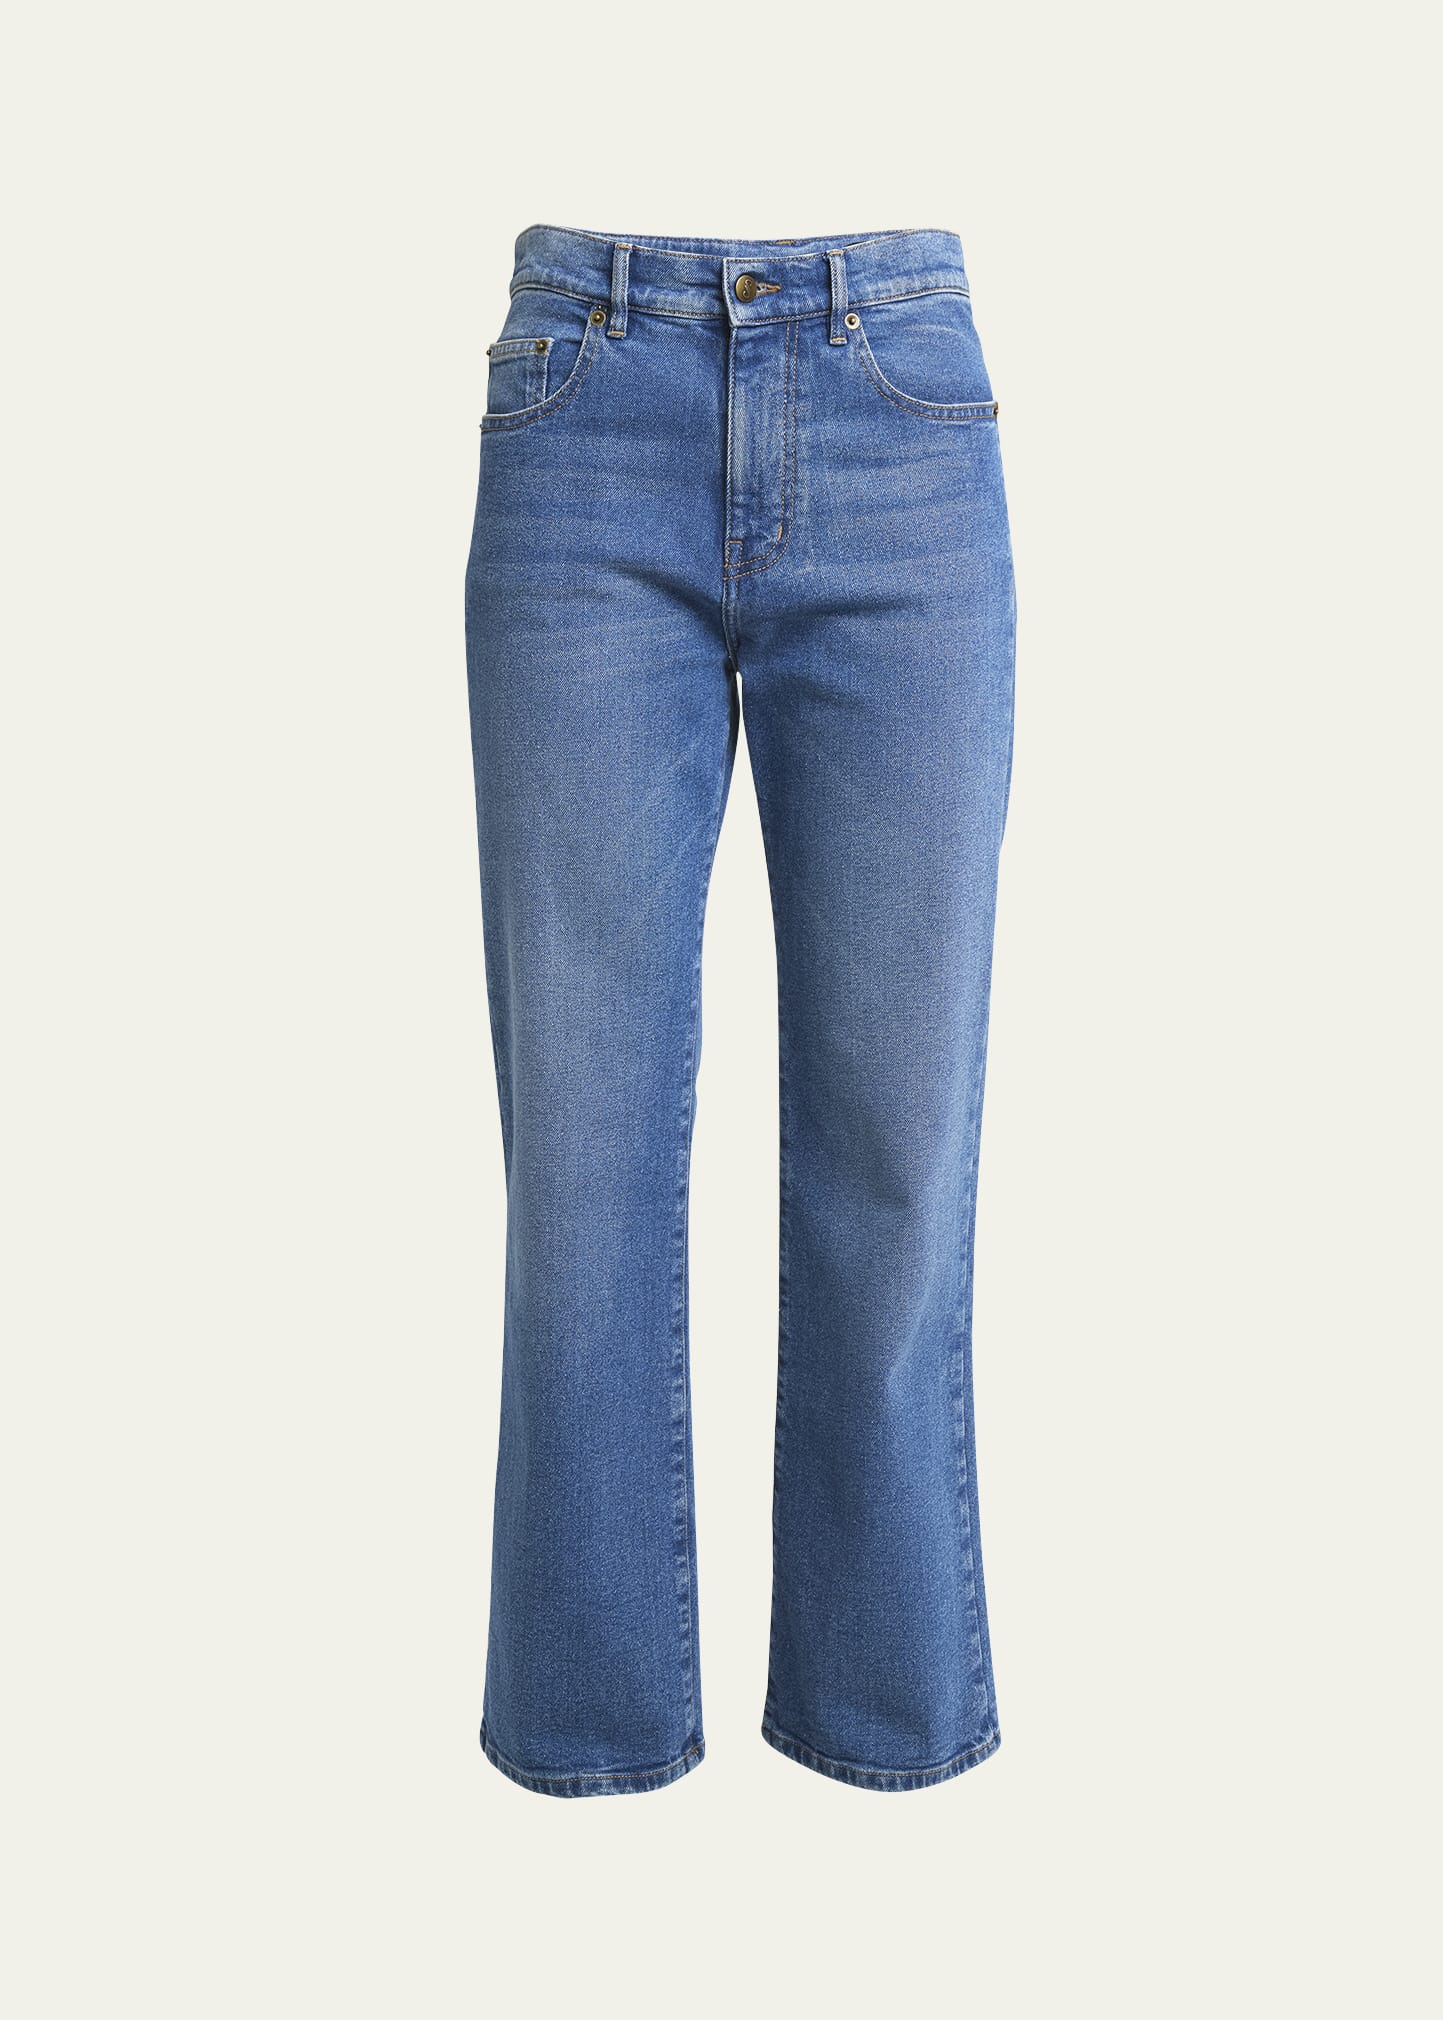 Proenza Schouler Jasper High-rise Straight-leg Ankle Jeans In Mediuim Blue